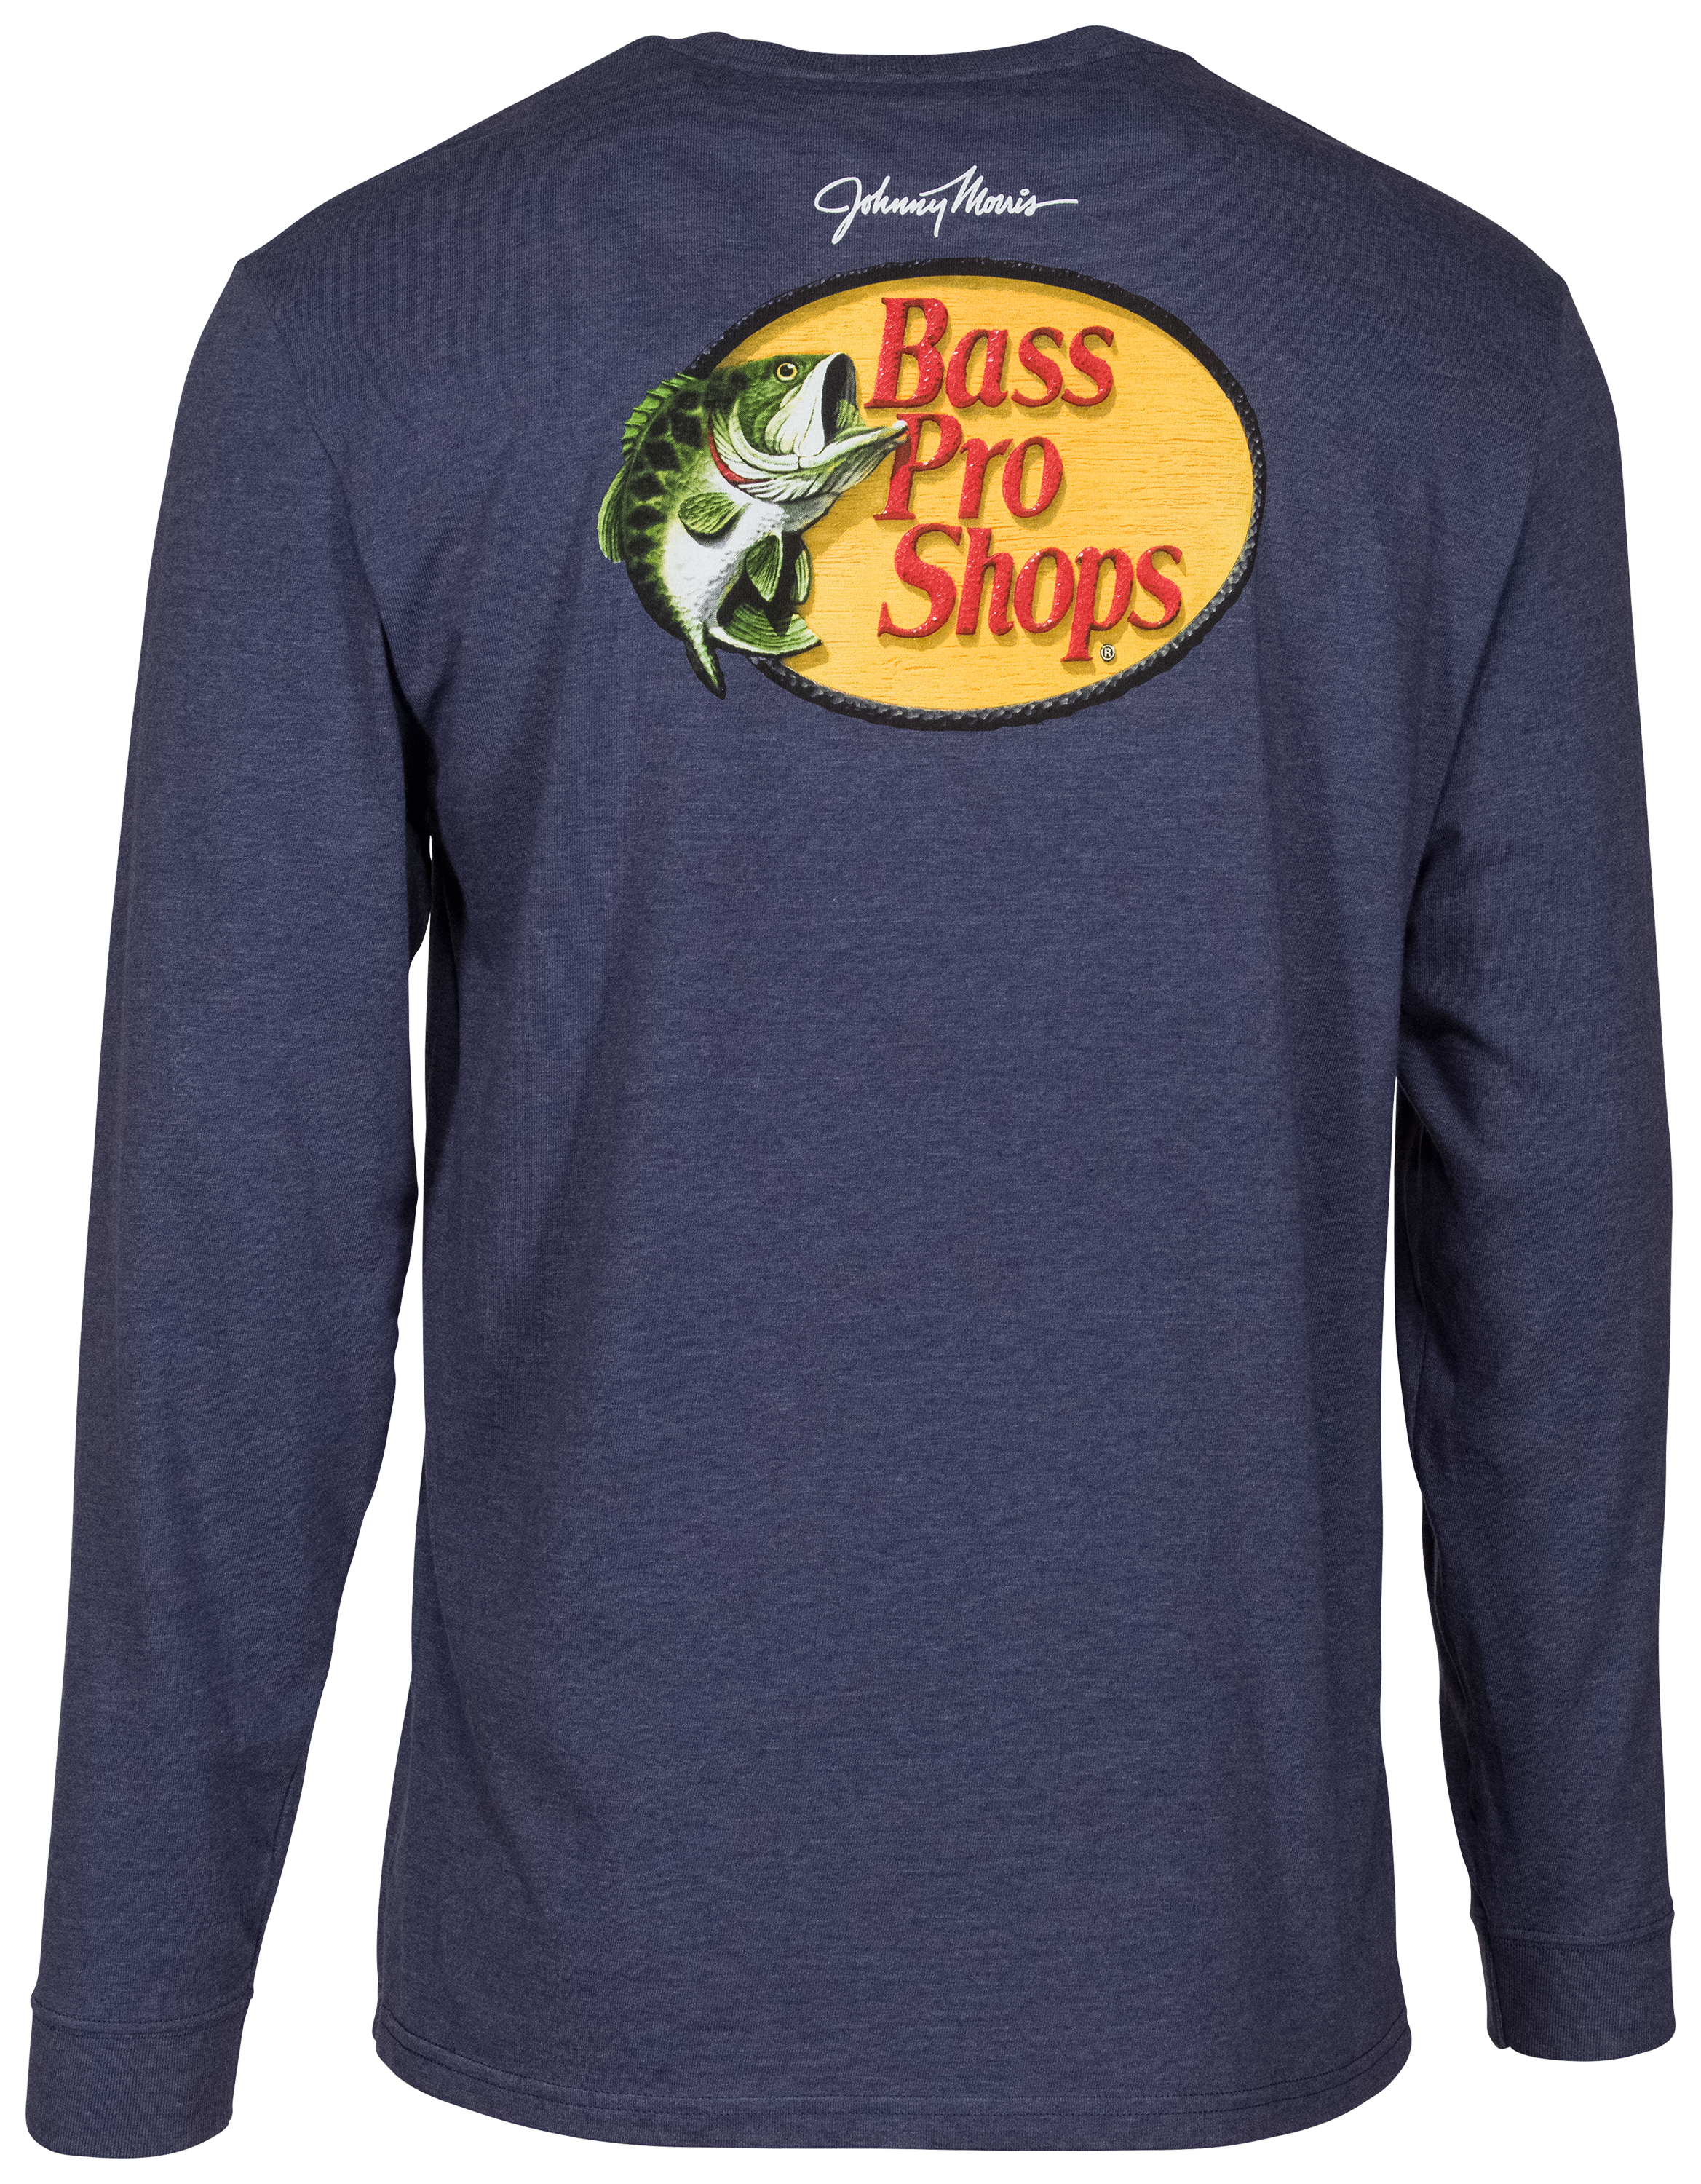 Bass Pro Shops Long-Sleeve Performance Shirt for Men - TrueTimber